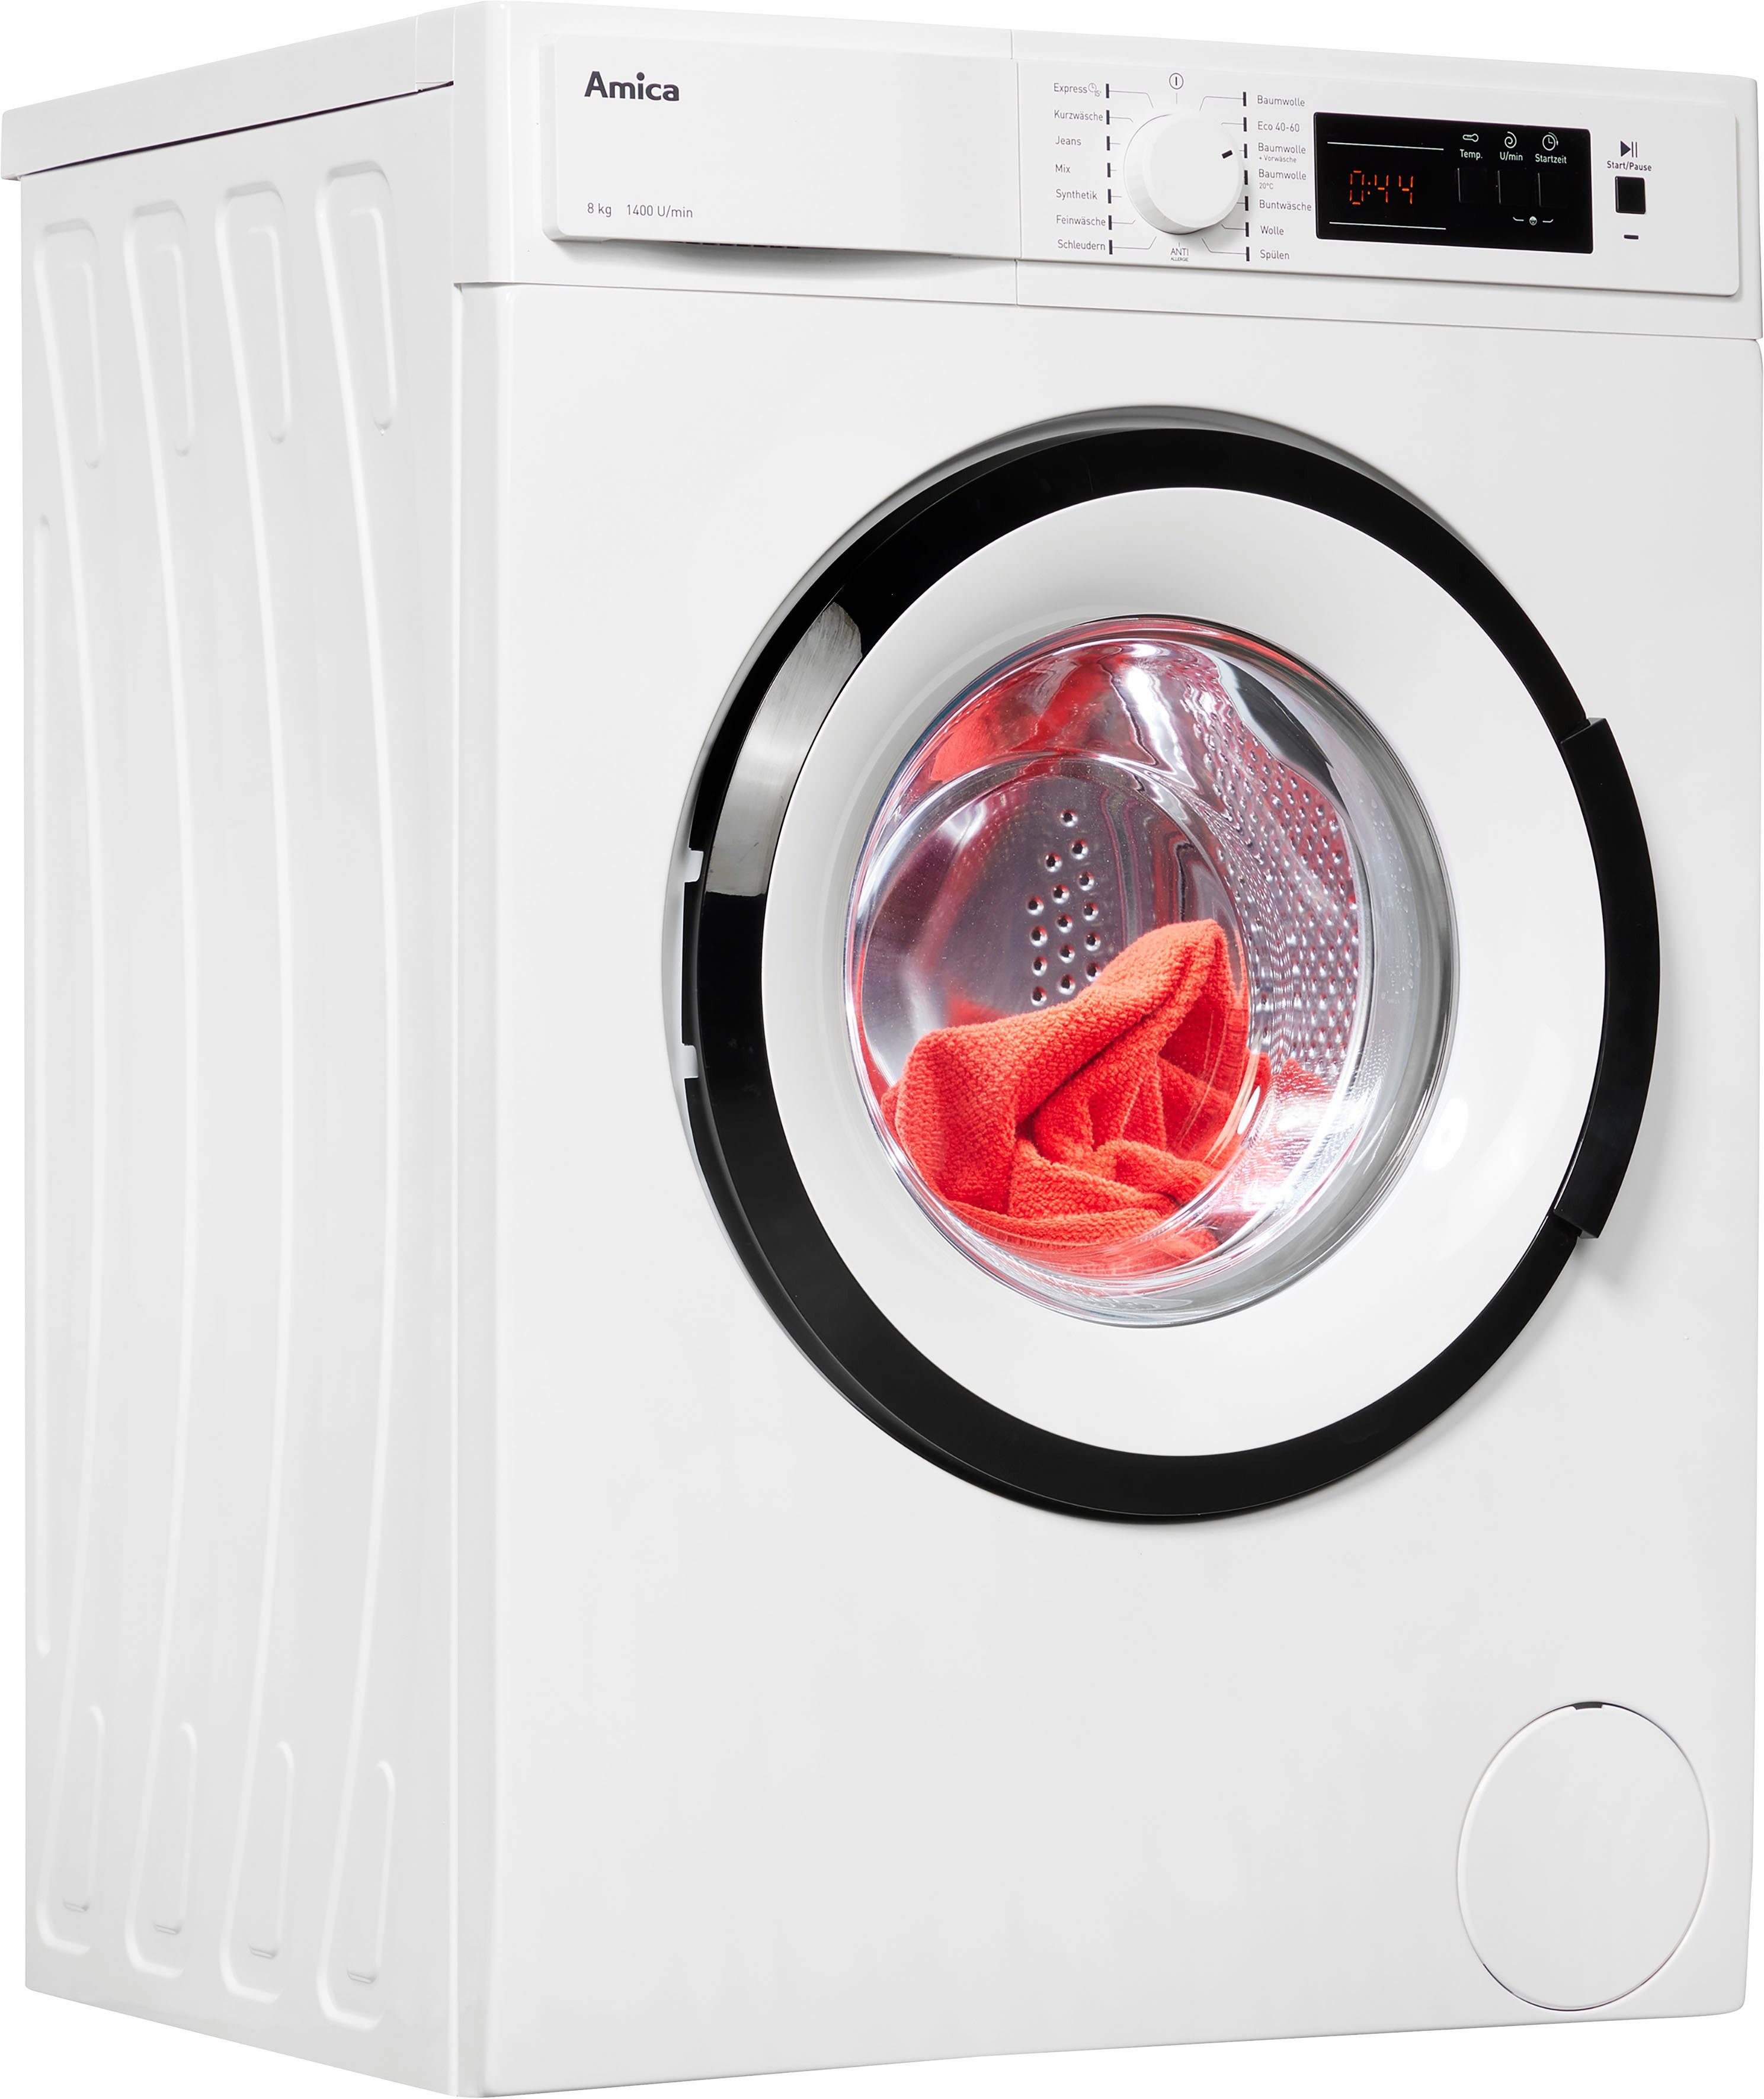 Amica Waschmaschine WA 484 072, 8 kg, 1400 U/min, Automatisches  Unwuchtsystem, Überlaufschutz